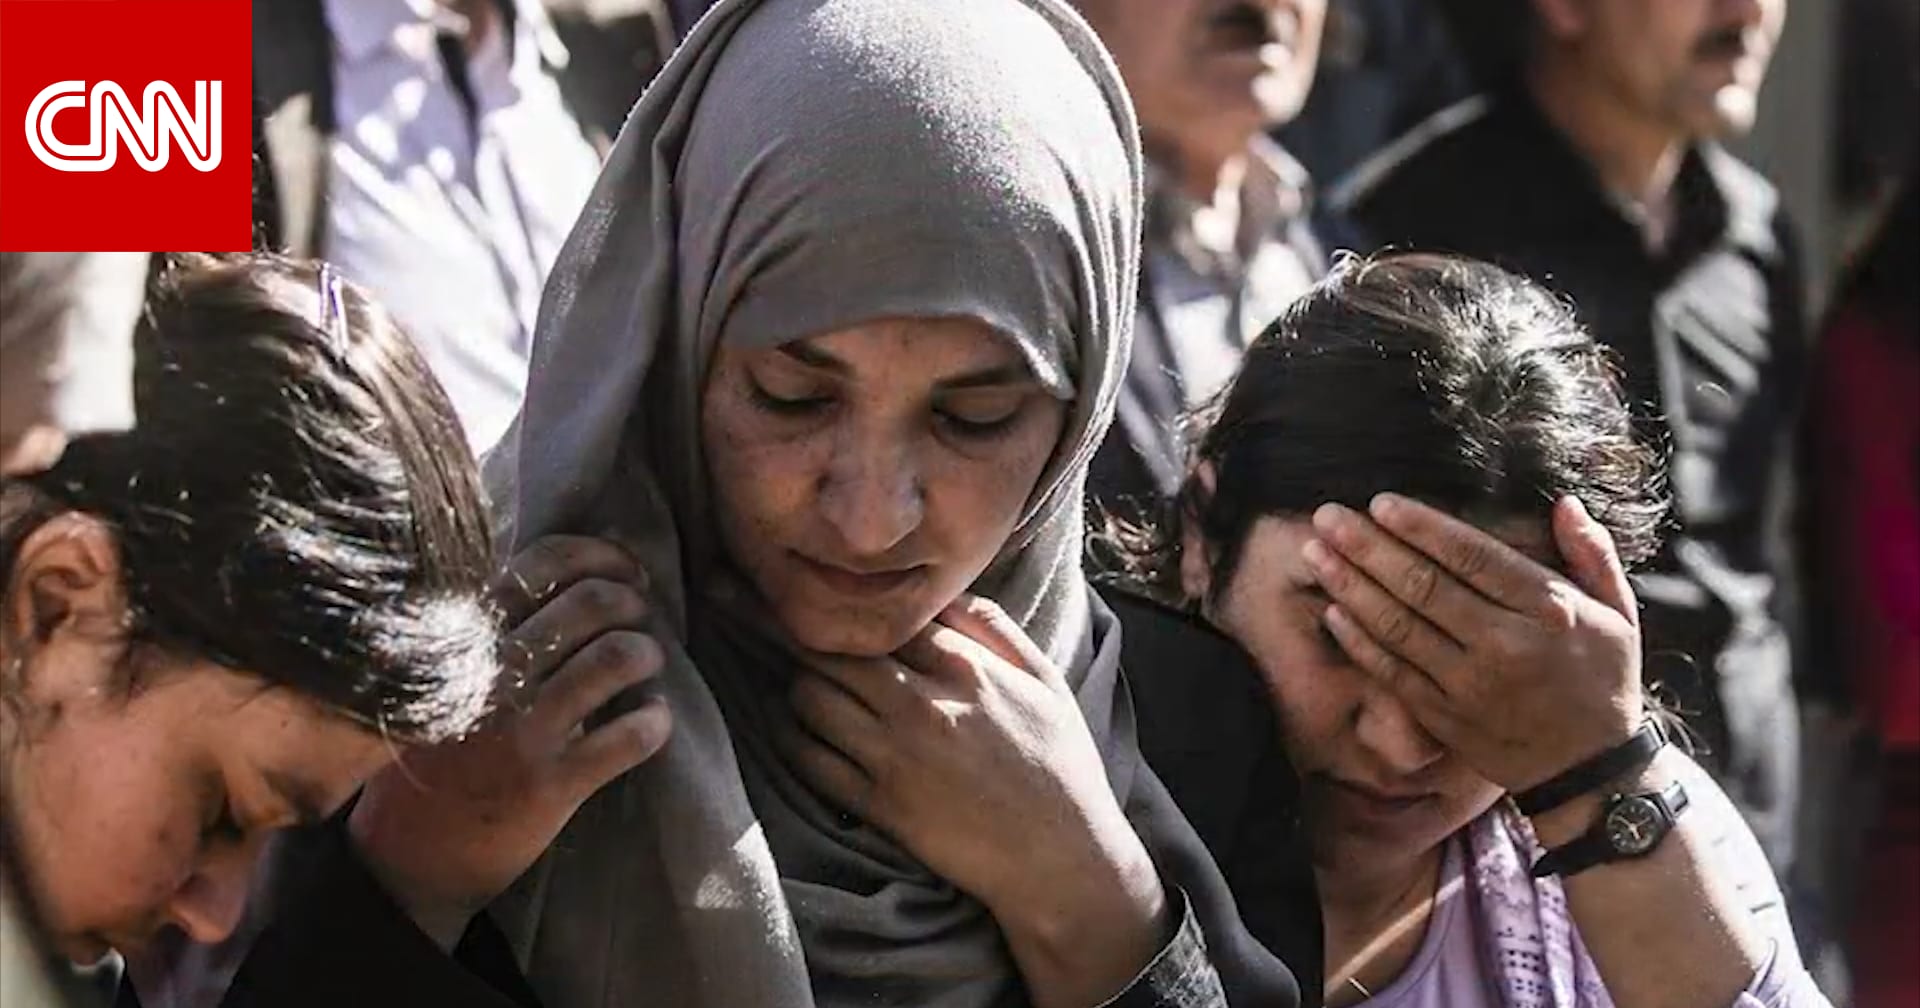 الأيزيديون: مقتل البغدادي ليس كافياً للشفاء من جروح داعش - CNN Arabic